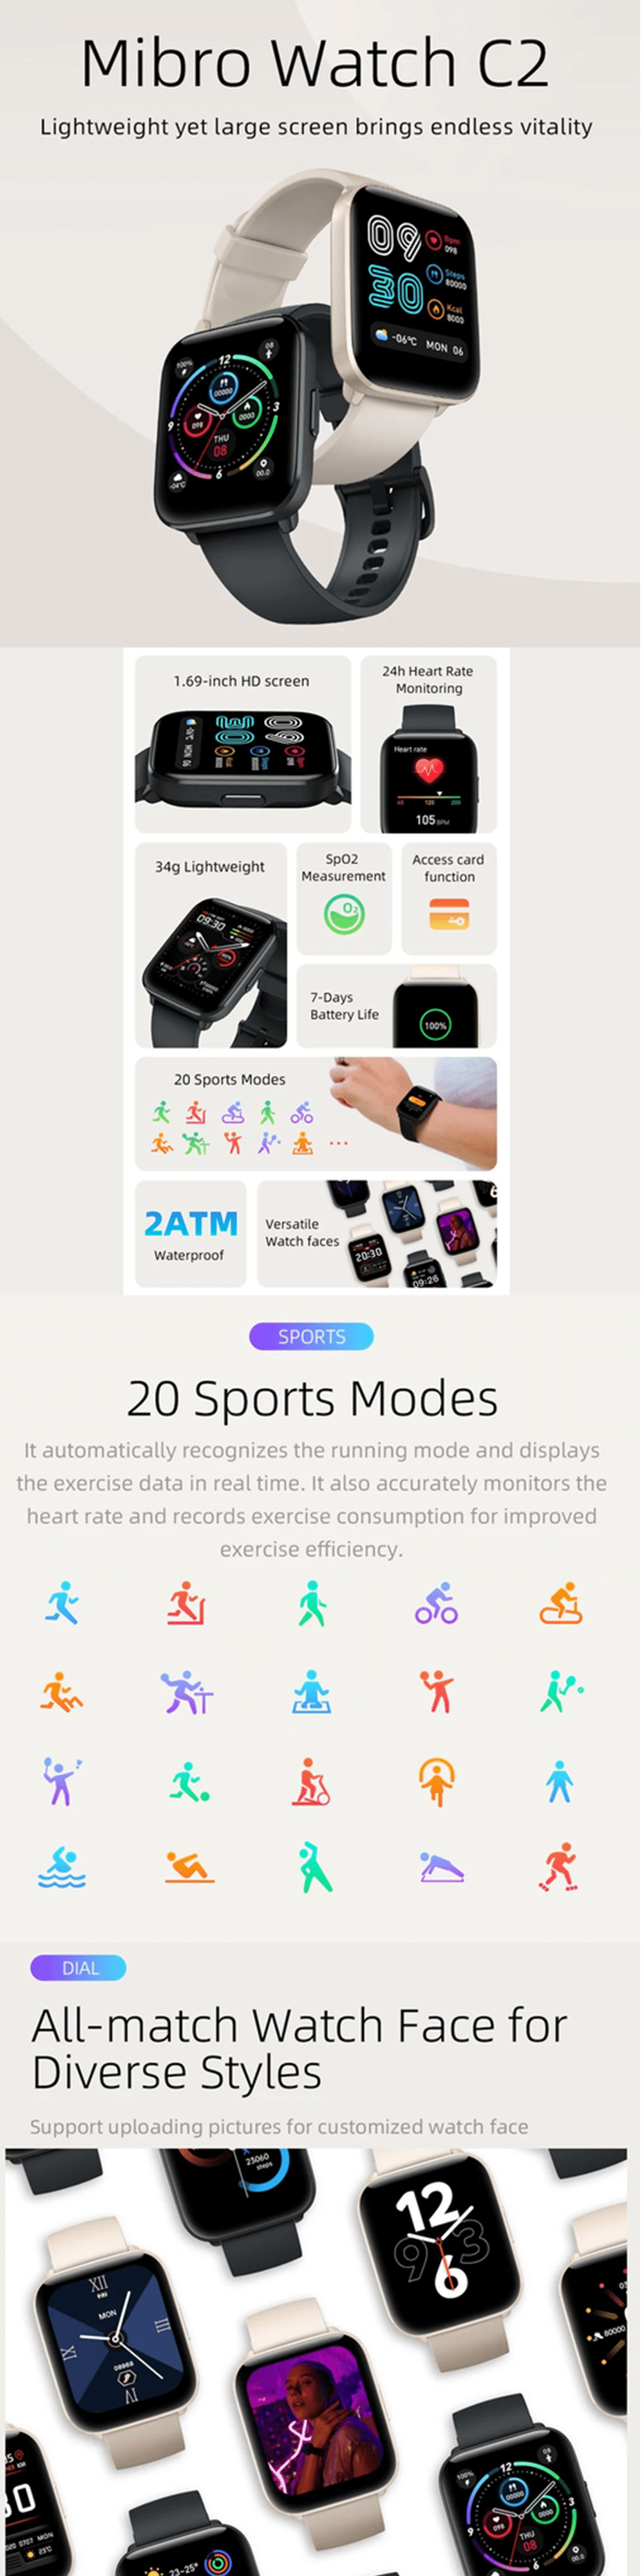 Xiaomi Mibro C2 1.69 inch HD Screen Smart Watch 5